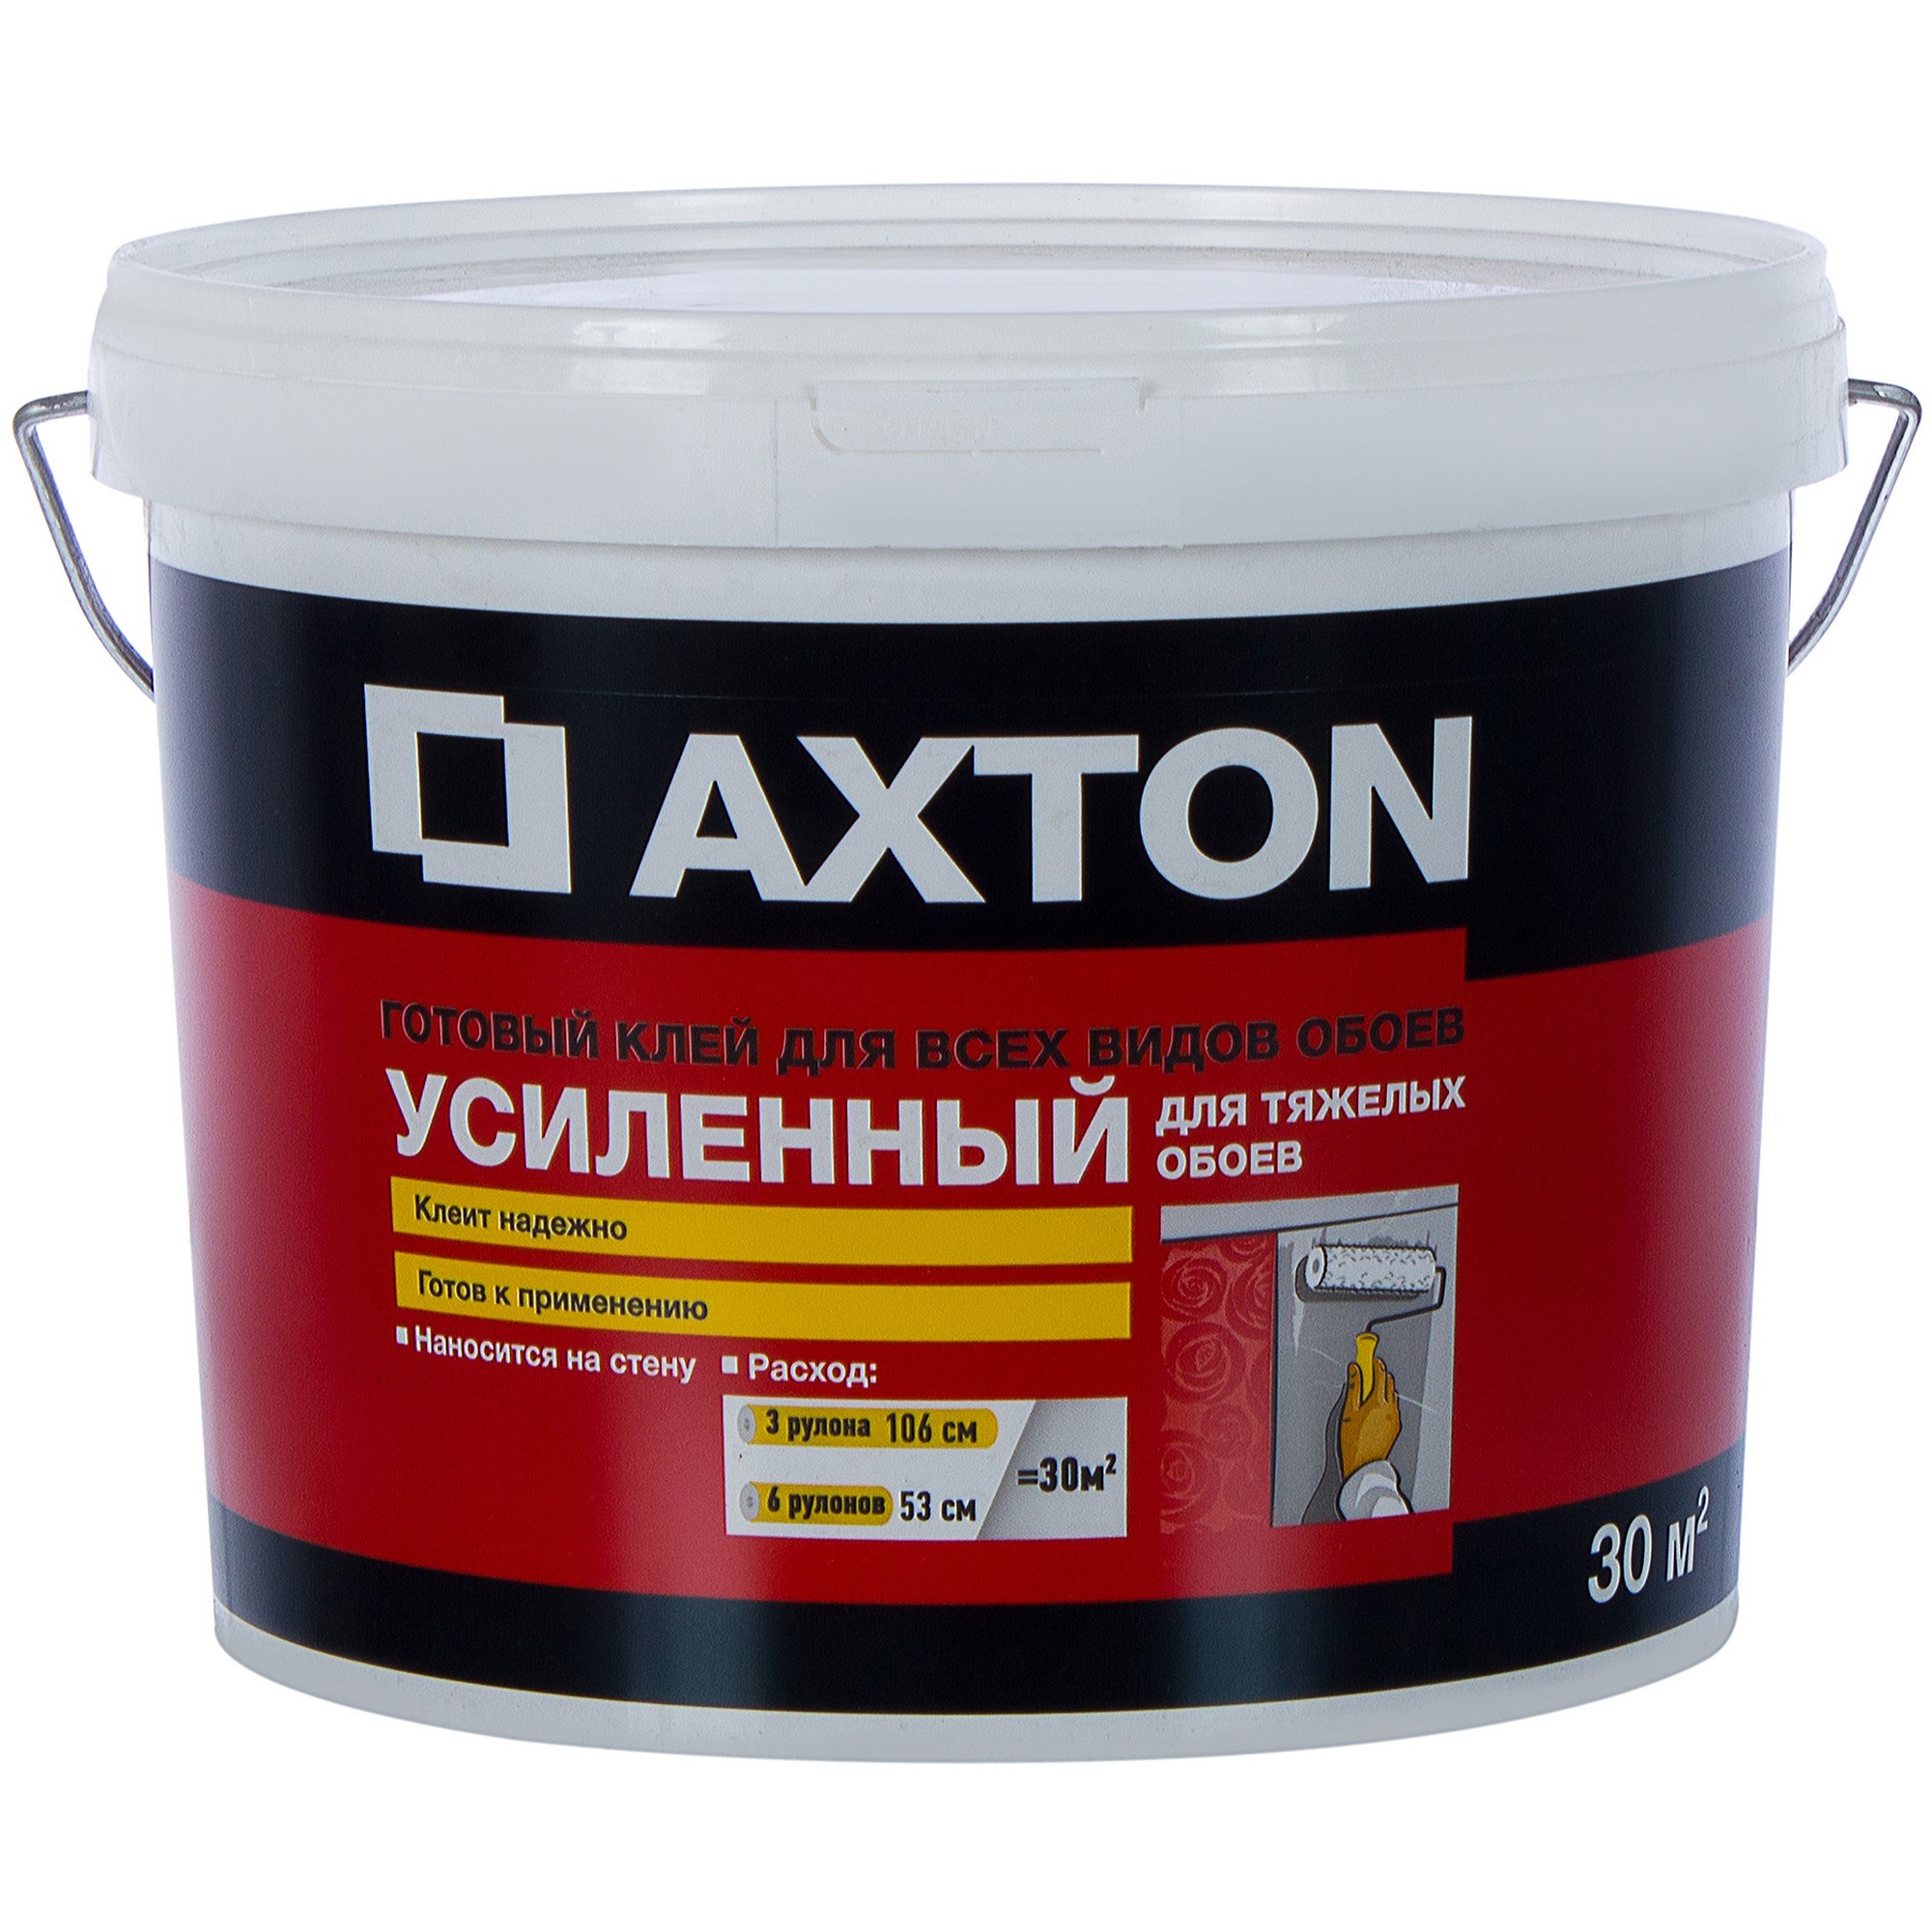  для тяжелых обоев усиленный готовый Axton 30 м² в Новосибирске .